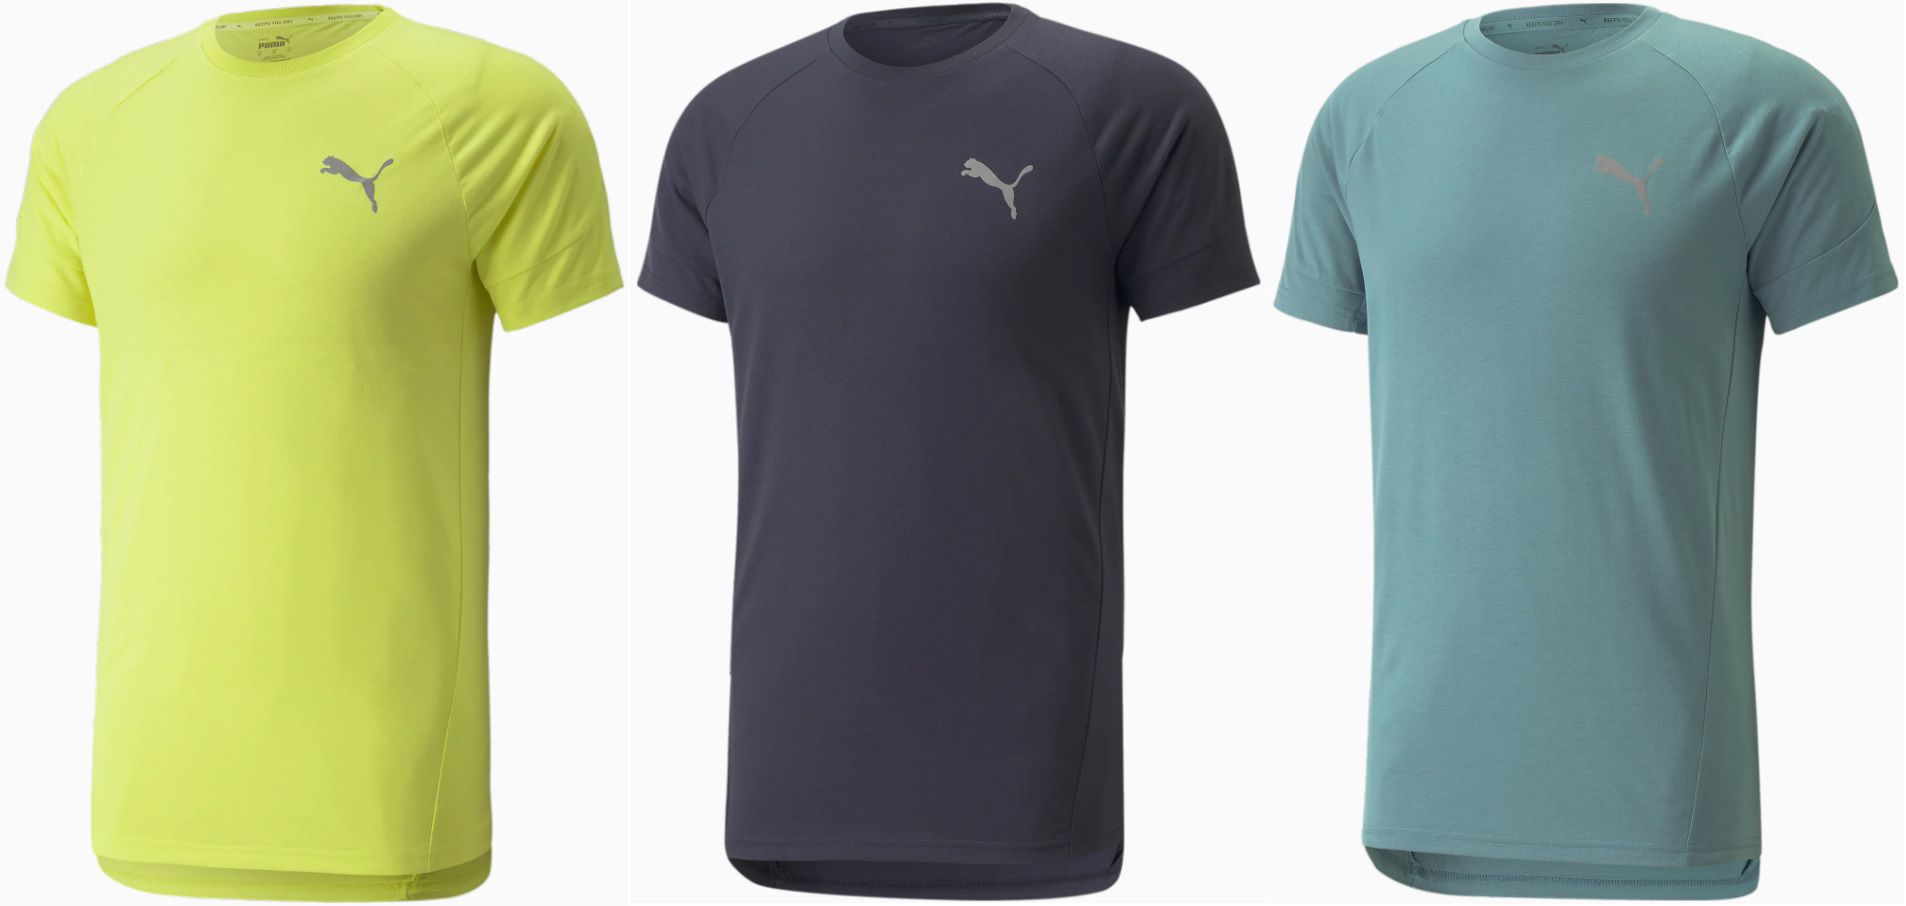 Puma Evostripe Herren T Shirt   versch. Farben für 9,96€ (statt 20€)